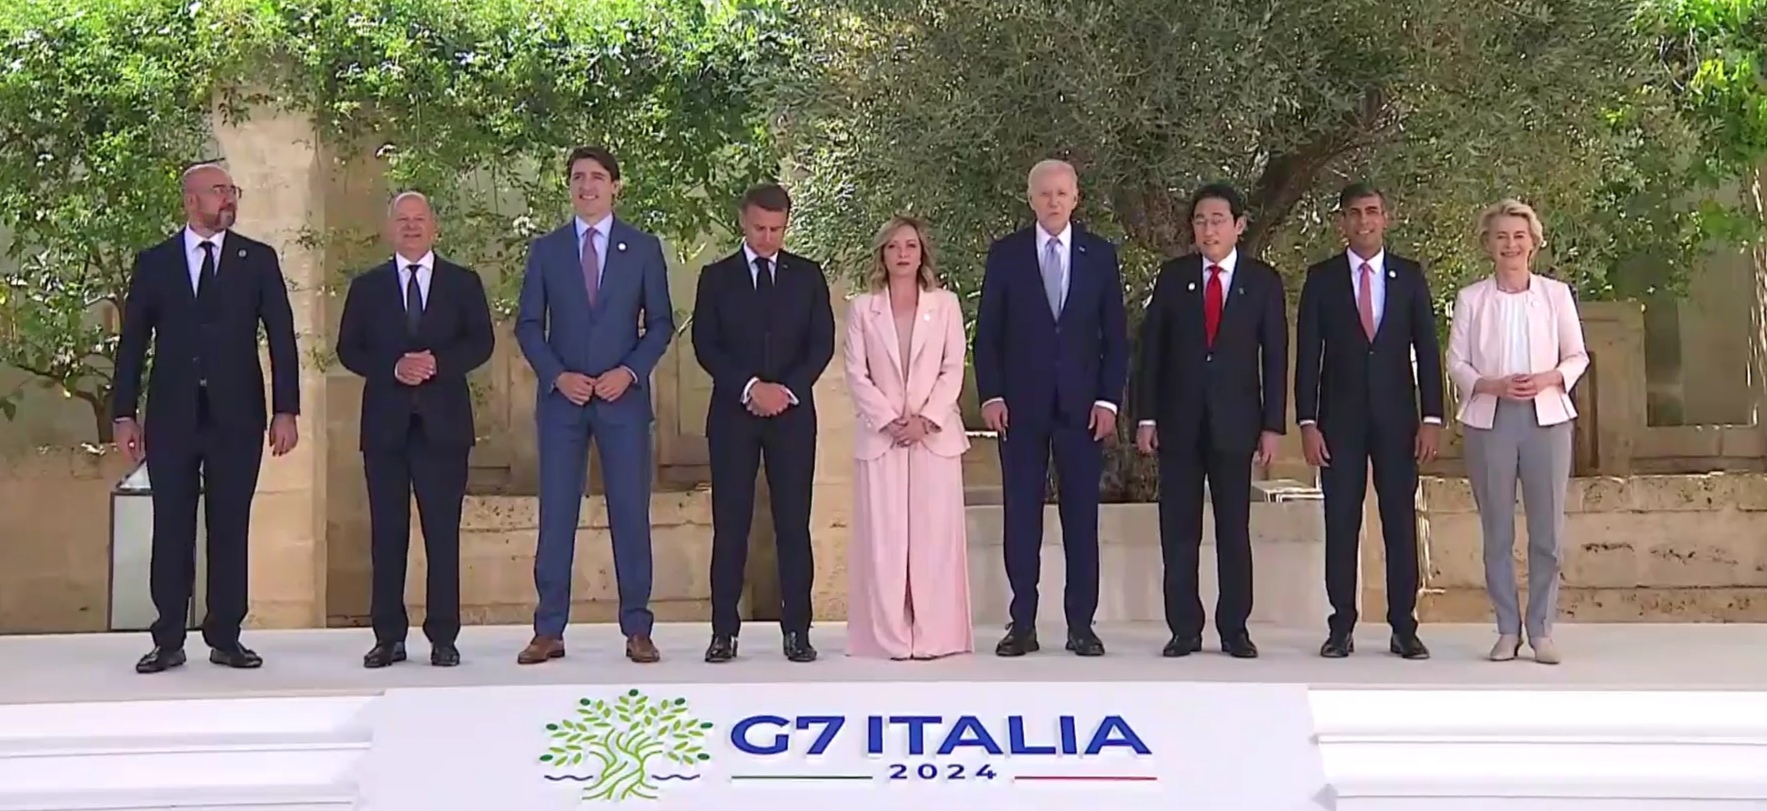 G7, il documento Sottoscritto dai leader